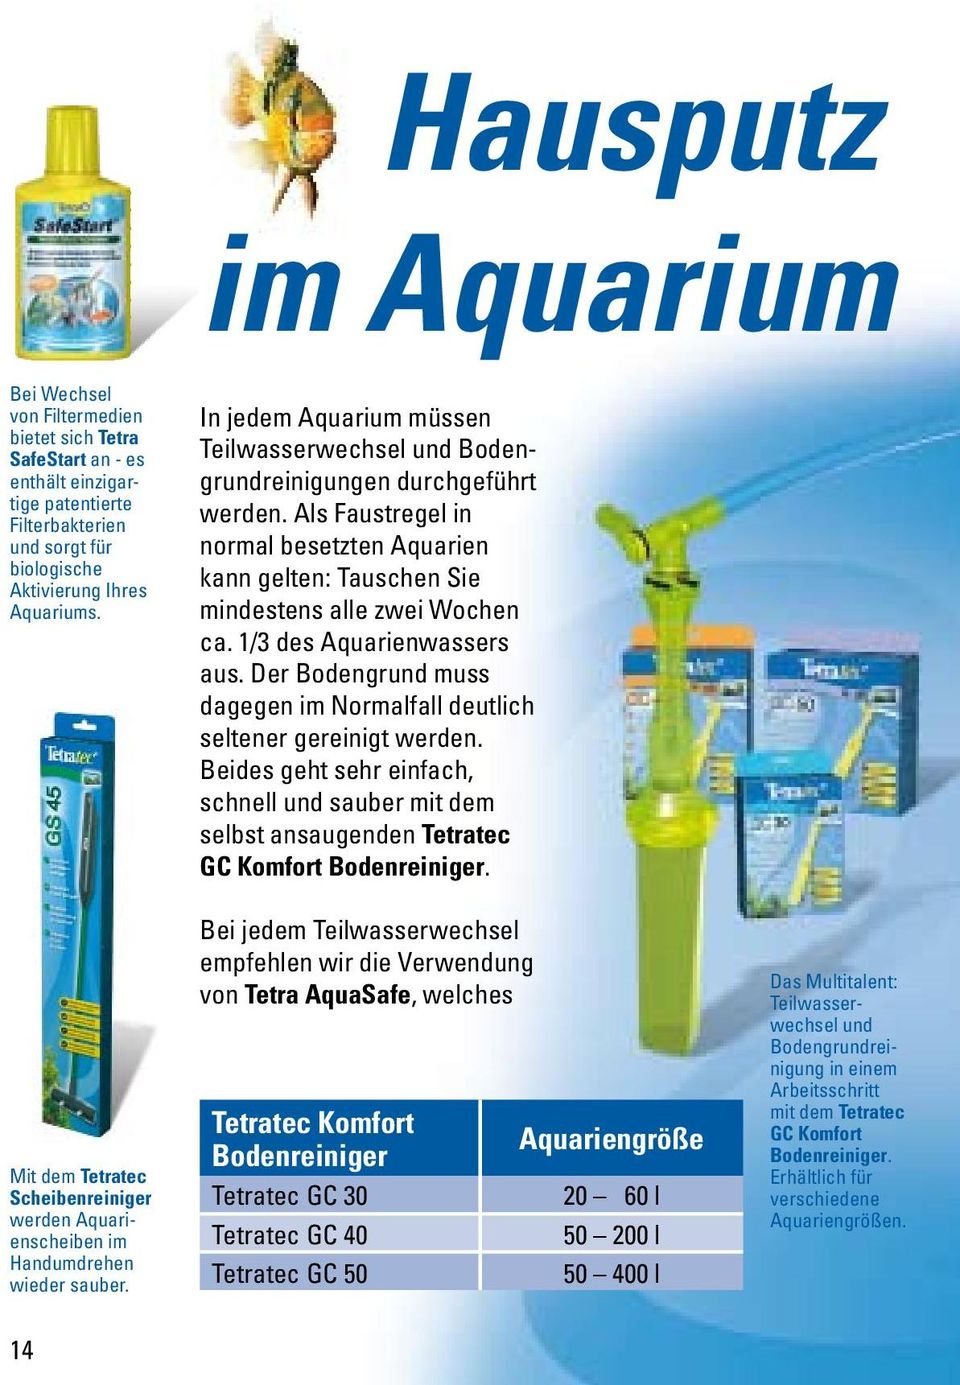 Als Faustregel in normal besetzten Aquarien kann gelten: Tauschen Sie mindestens alle zwei Wochen ca. 1/3 des Aquarienwassers aus.